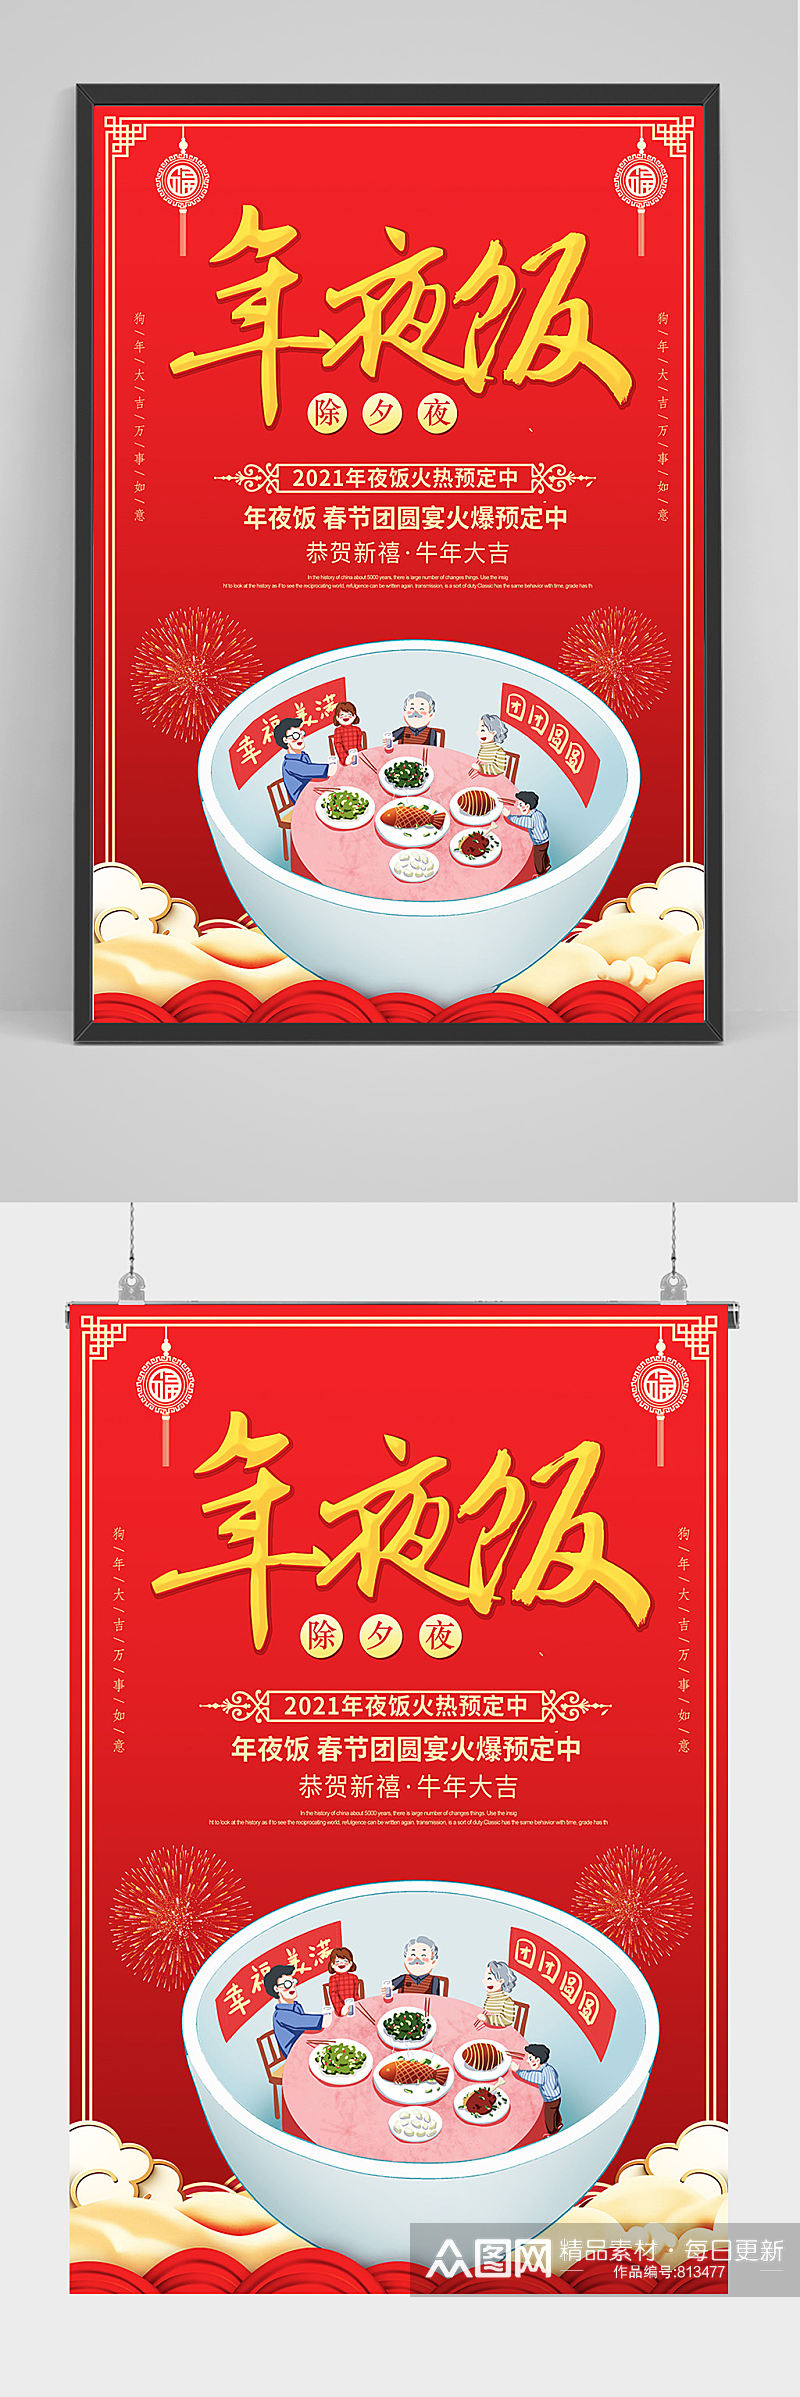 红色喜庆年夜饭海报设计素材